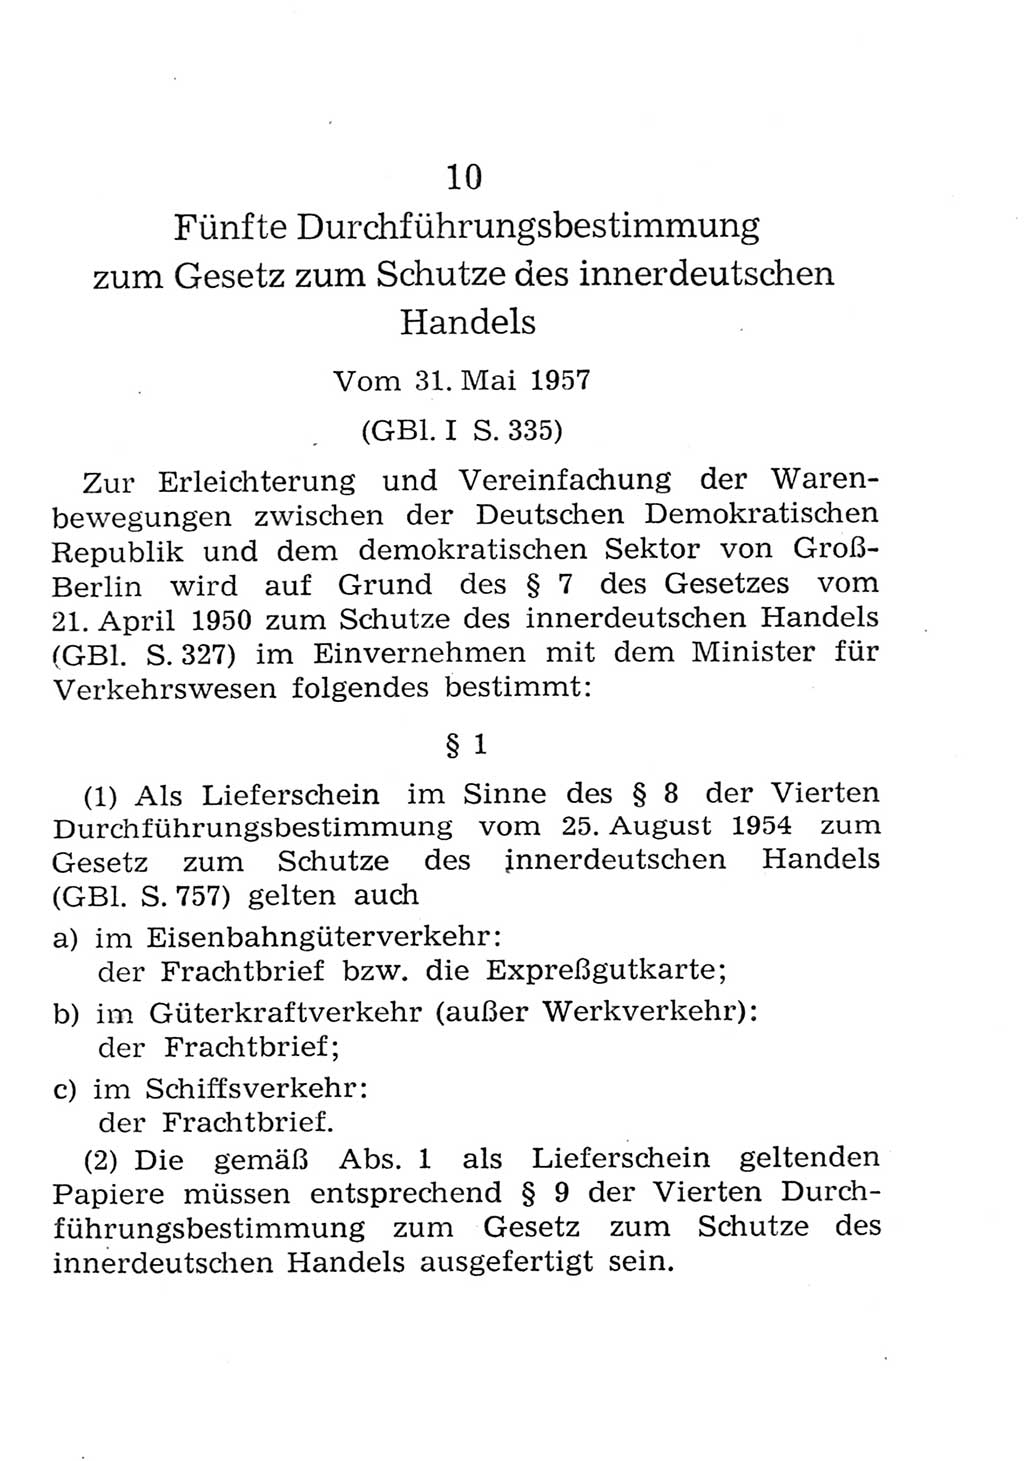 Strafgesetzbuch (StGB) und andere Strafgesetze [Deutsche Demokratische Republik (DDR)] 1957, Seite 277 (StGB Strafges. DDR 1957, S. 277)